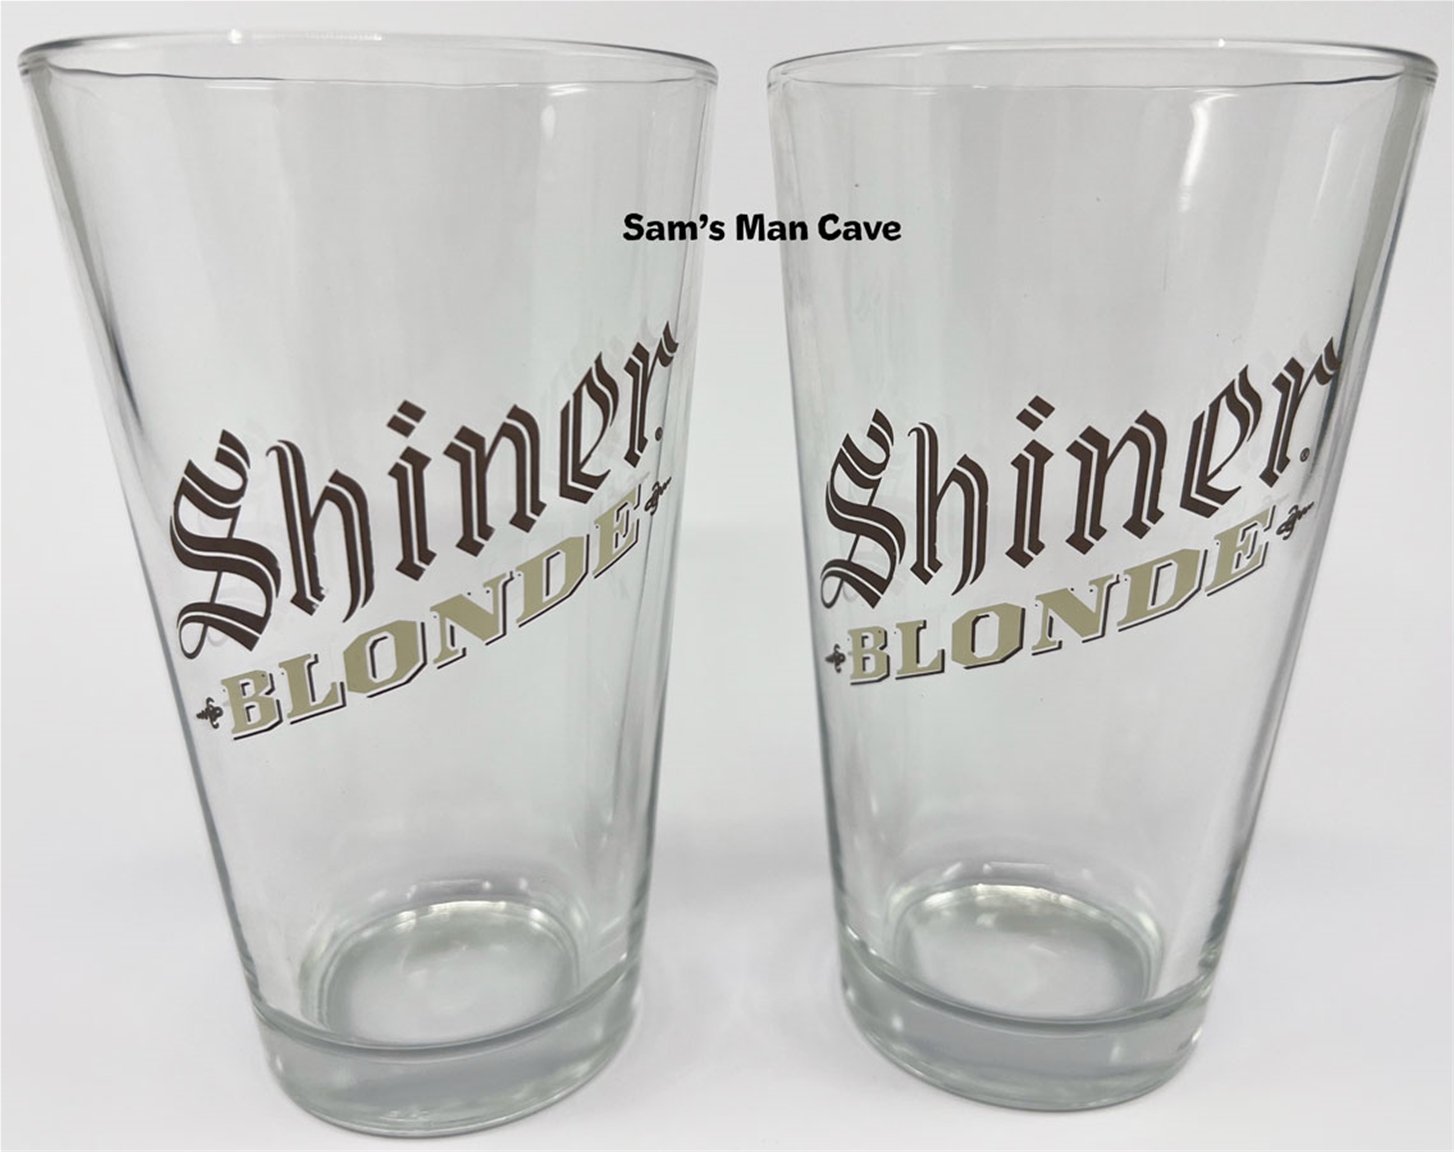 Shiner Blonde Pint Glass Set